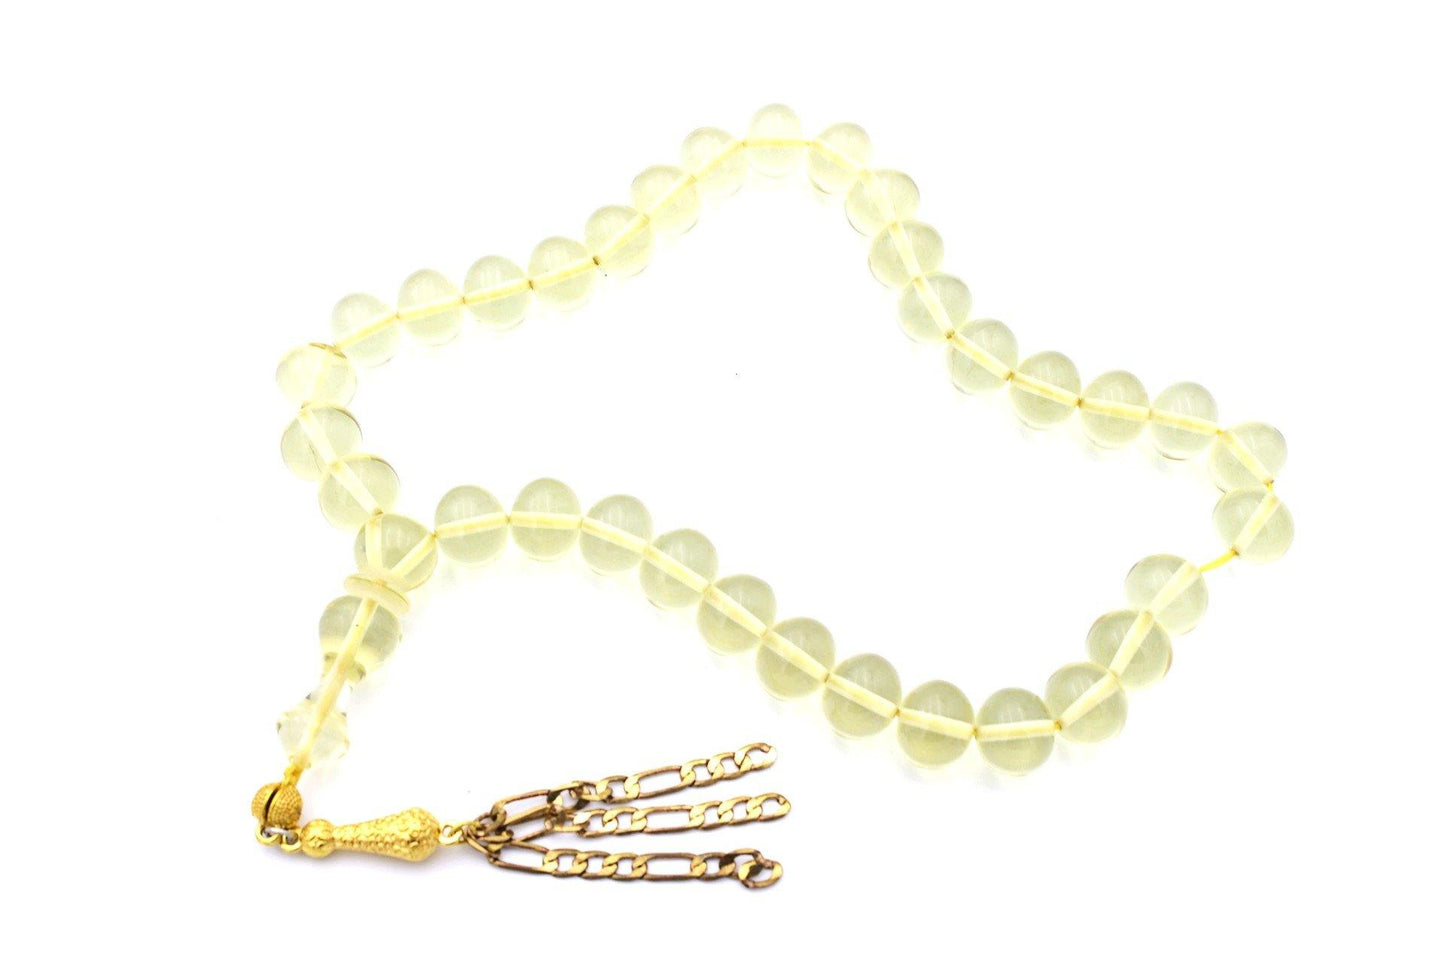 bakelite catalin amber prayer beads uk gemstones jewellery for sale tesbih shop online jewellery